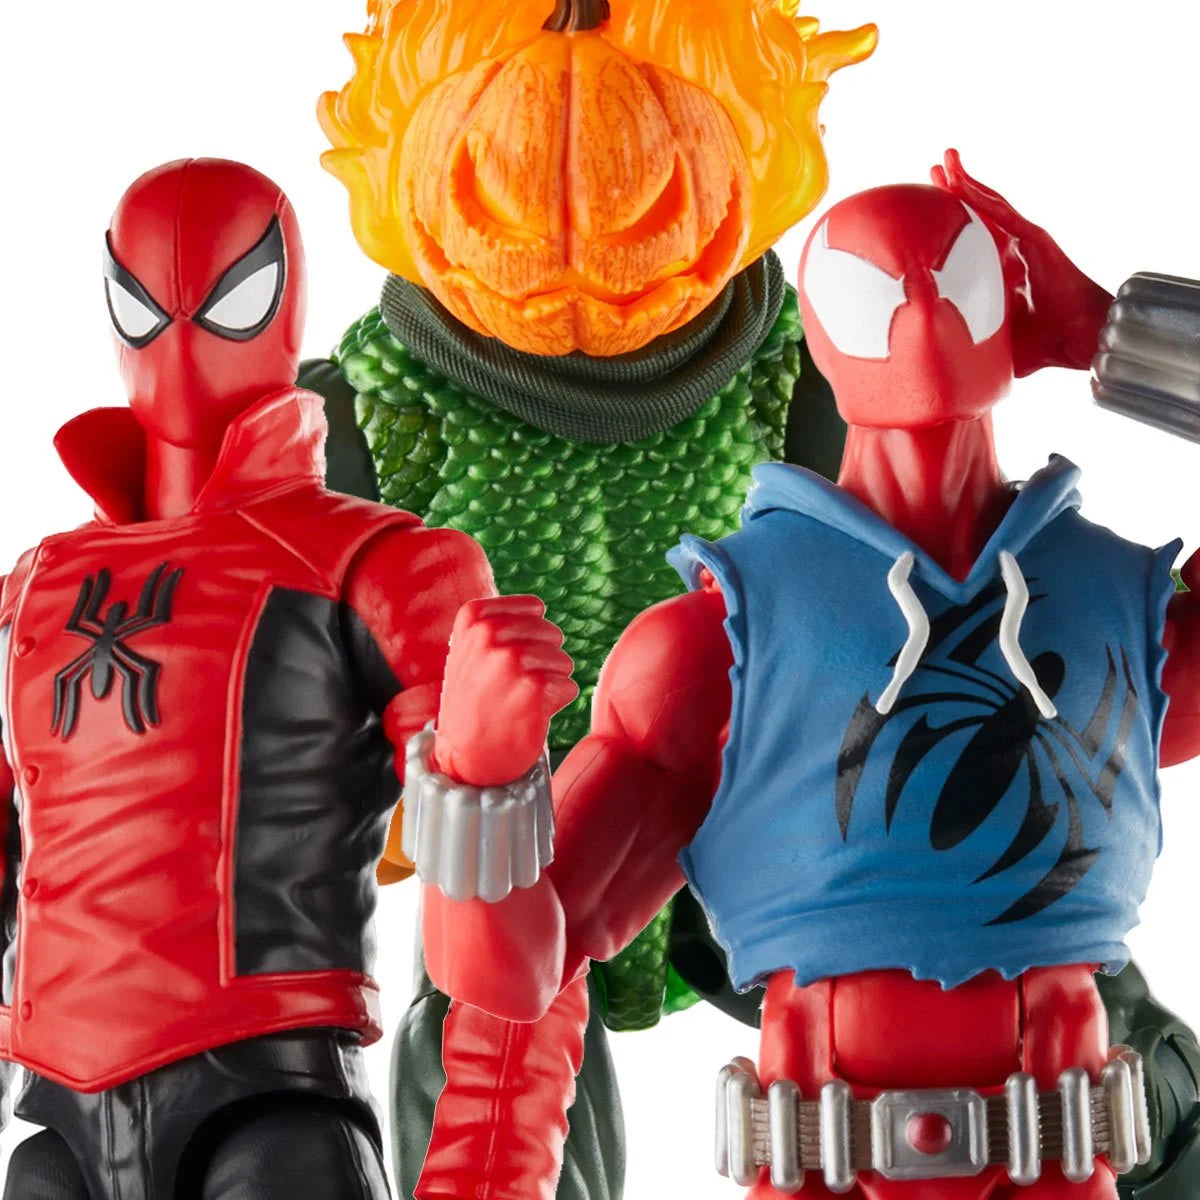 Spider-Man Marvel Legends Comic 6-inch Action Figures Wave 1 Case of 6 - HERETOSERVEYOU